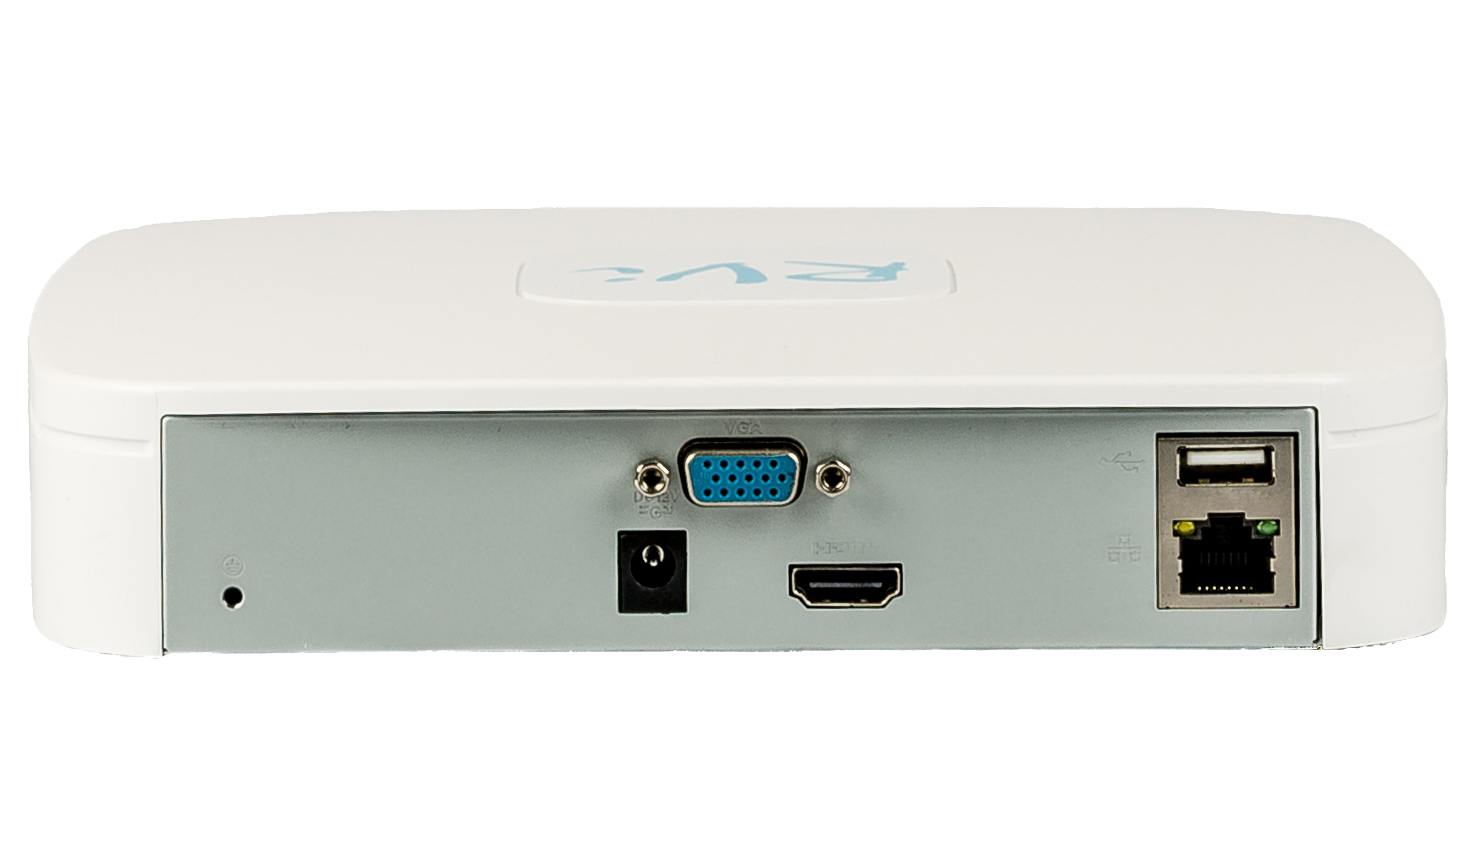 Видеорегистратор для IP-камер,4-х потоковый,1выход VGA+1HDMI (аудио/видео);1920х1080 (HDMI) / 1280х1